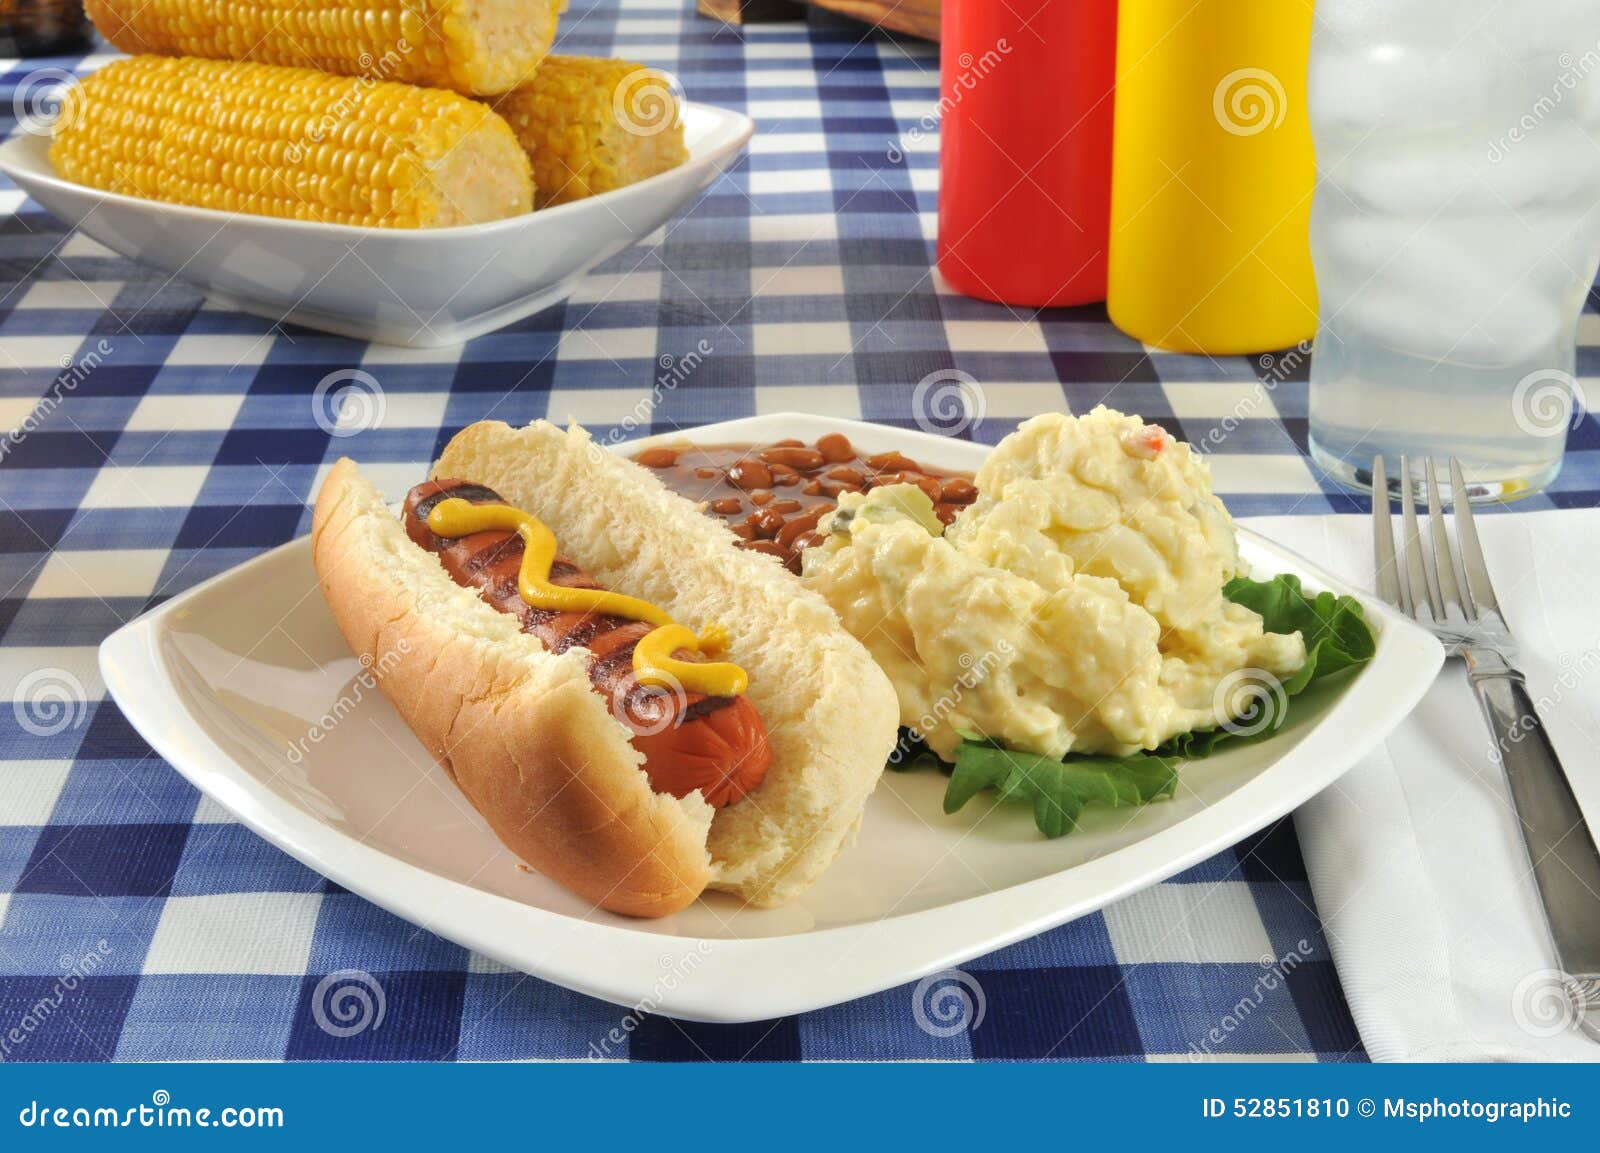 Ψημένο στη σχάρα σκυλί μουστάρδας. Ένα ψημένο στη σχάρα σκυλί μουστάρδας σε έναν πίνακα πικ-νίκ με τη σαλάτα πατατών και τα ψημένα φασόλια